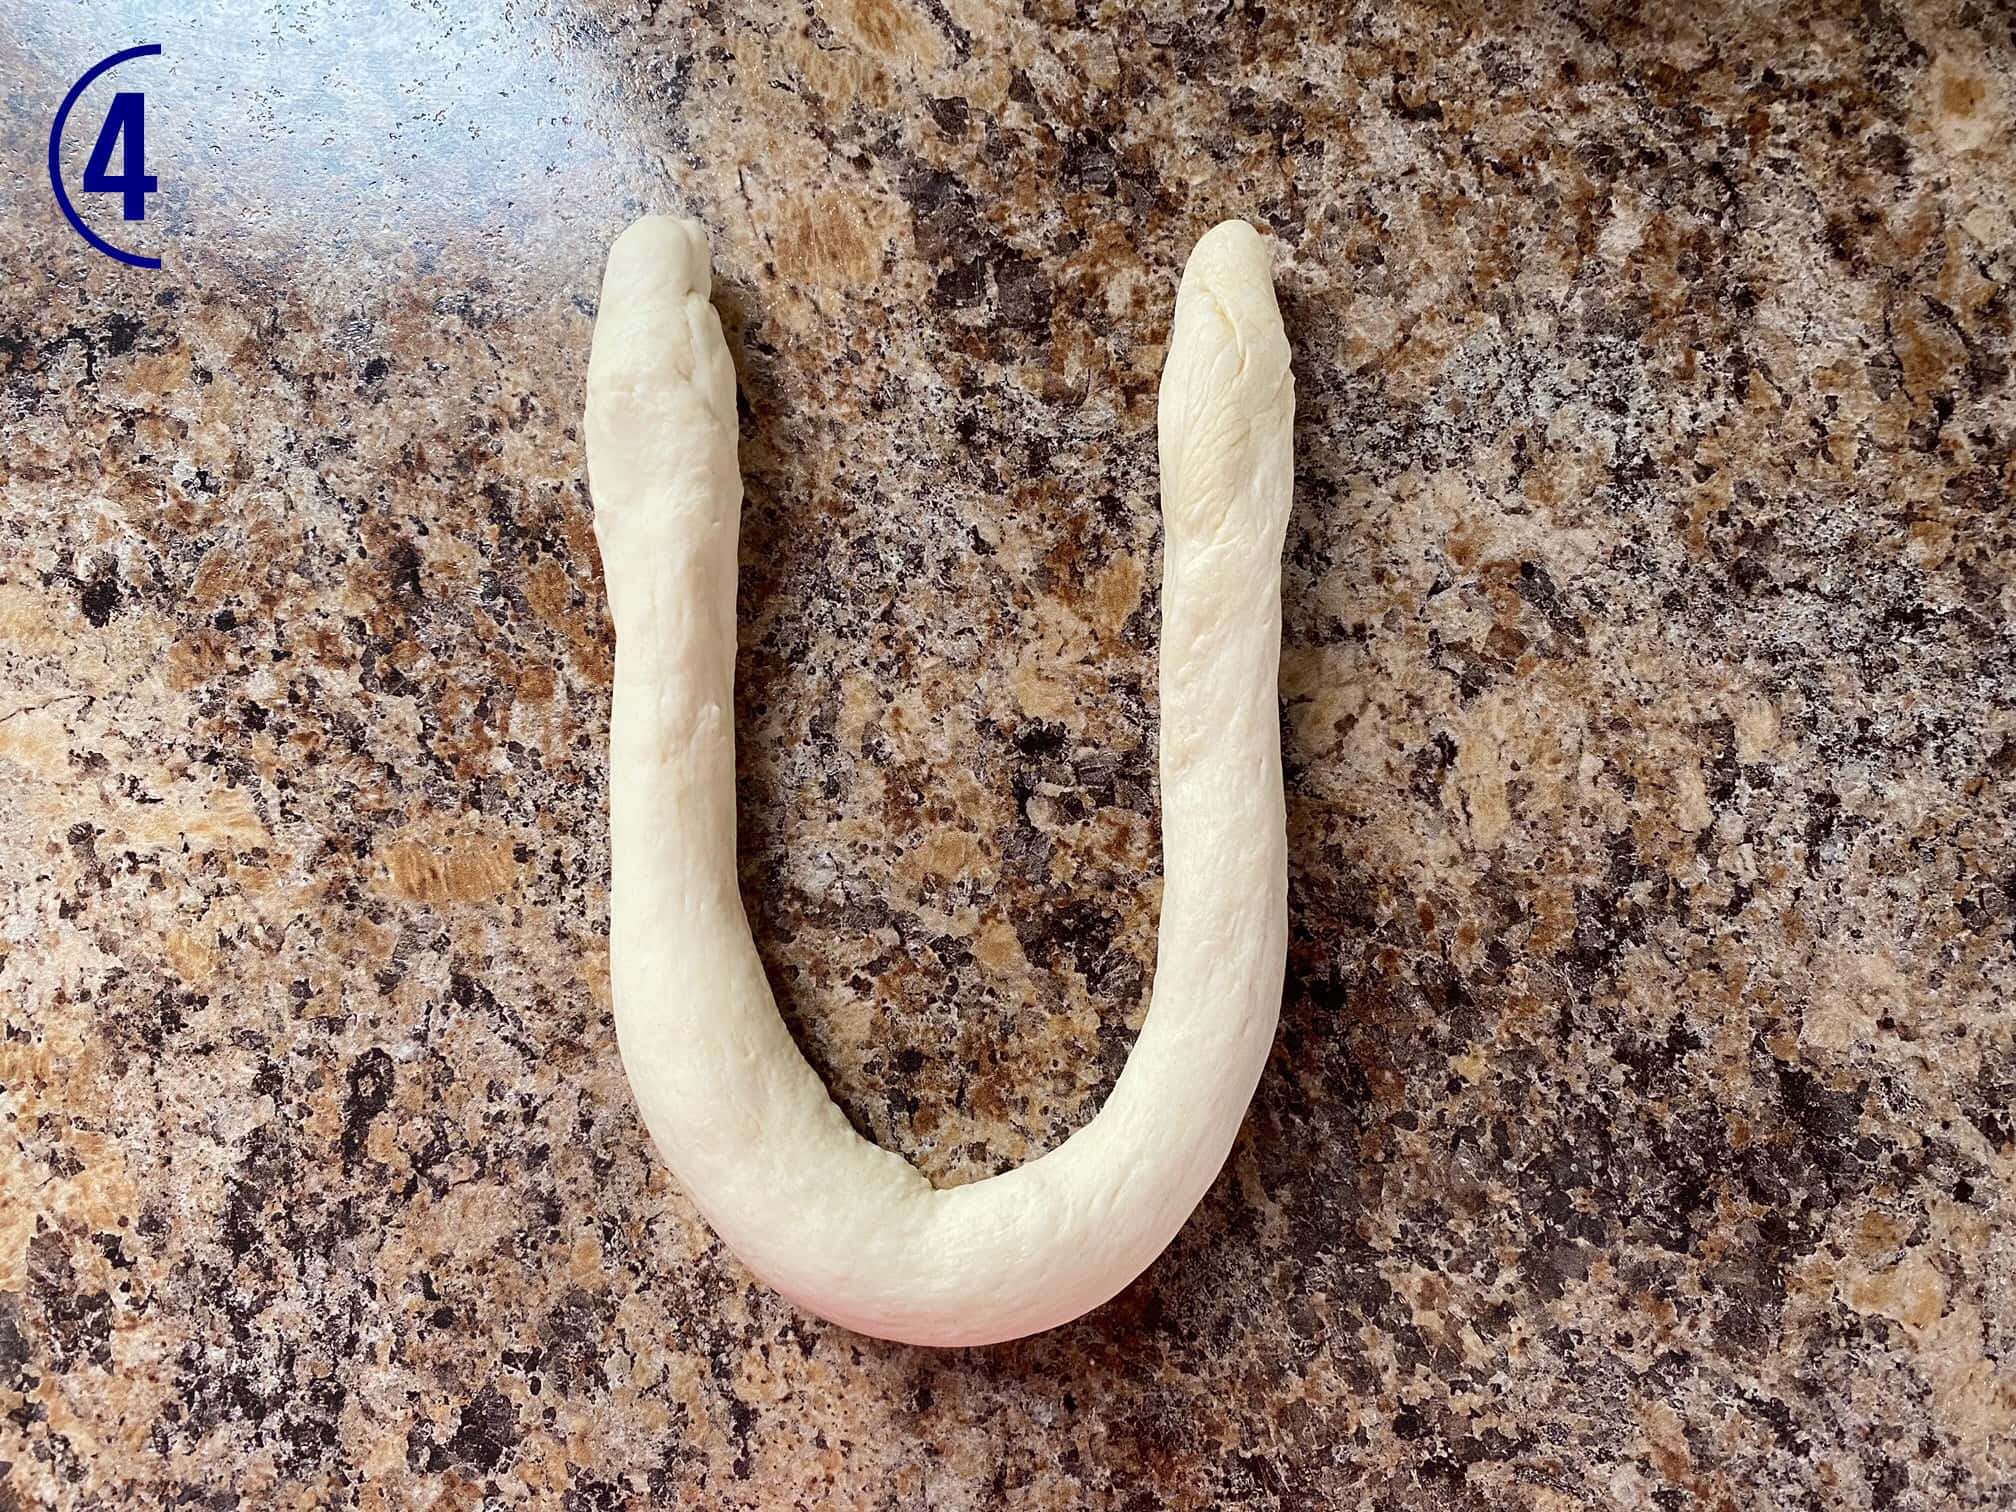 Dough rope has ends turned up to mimic a "u" shape.